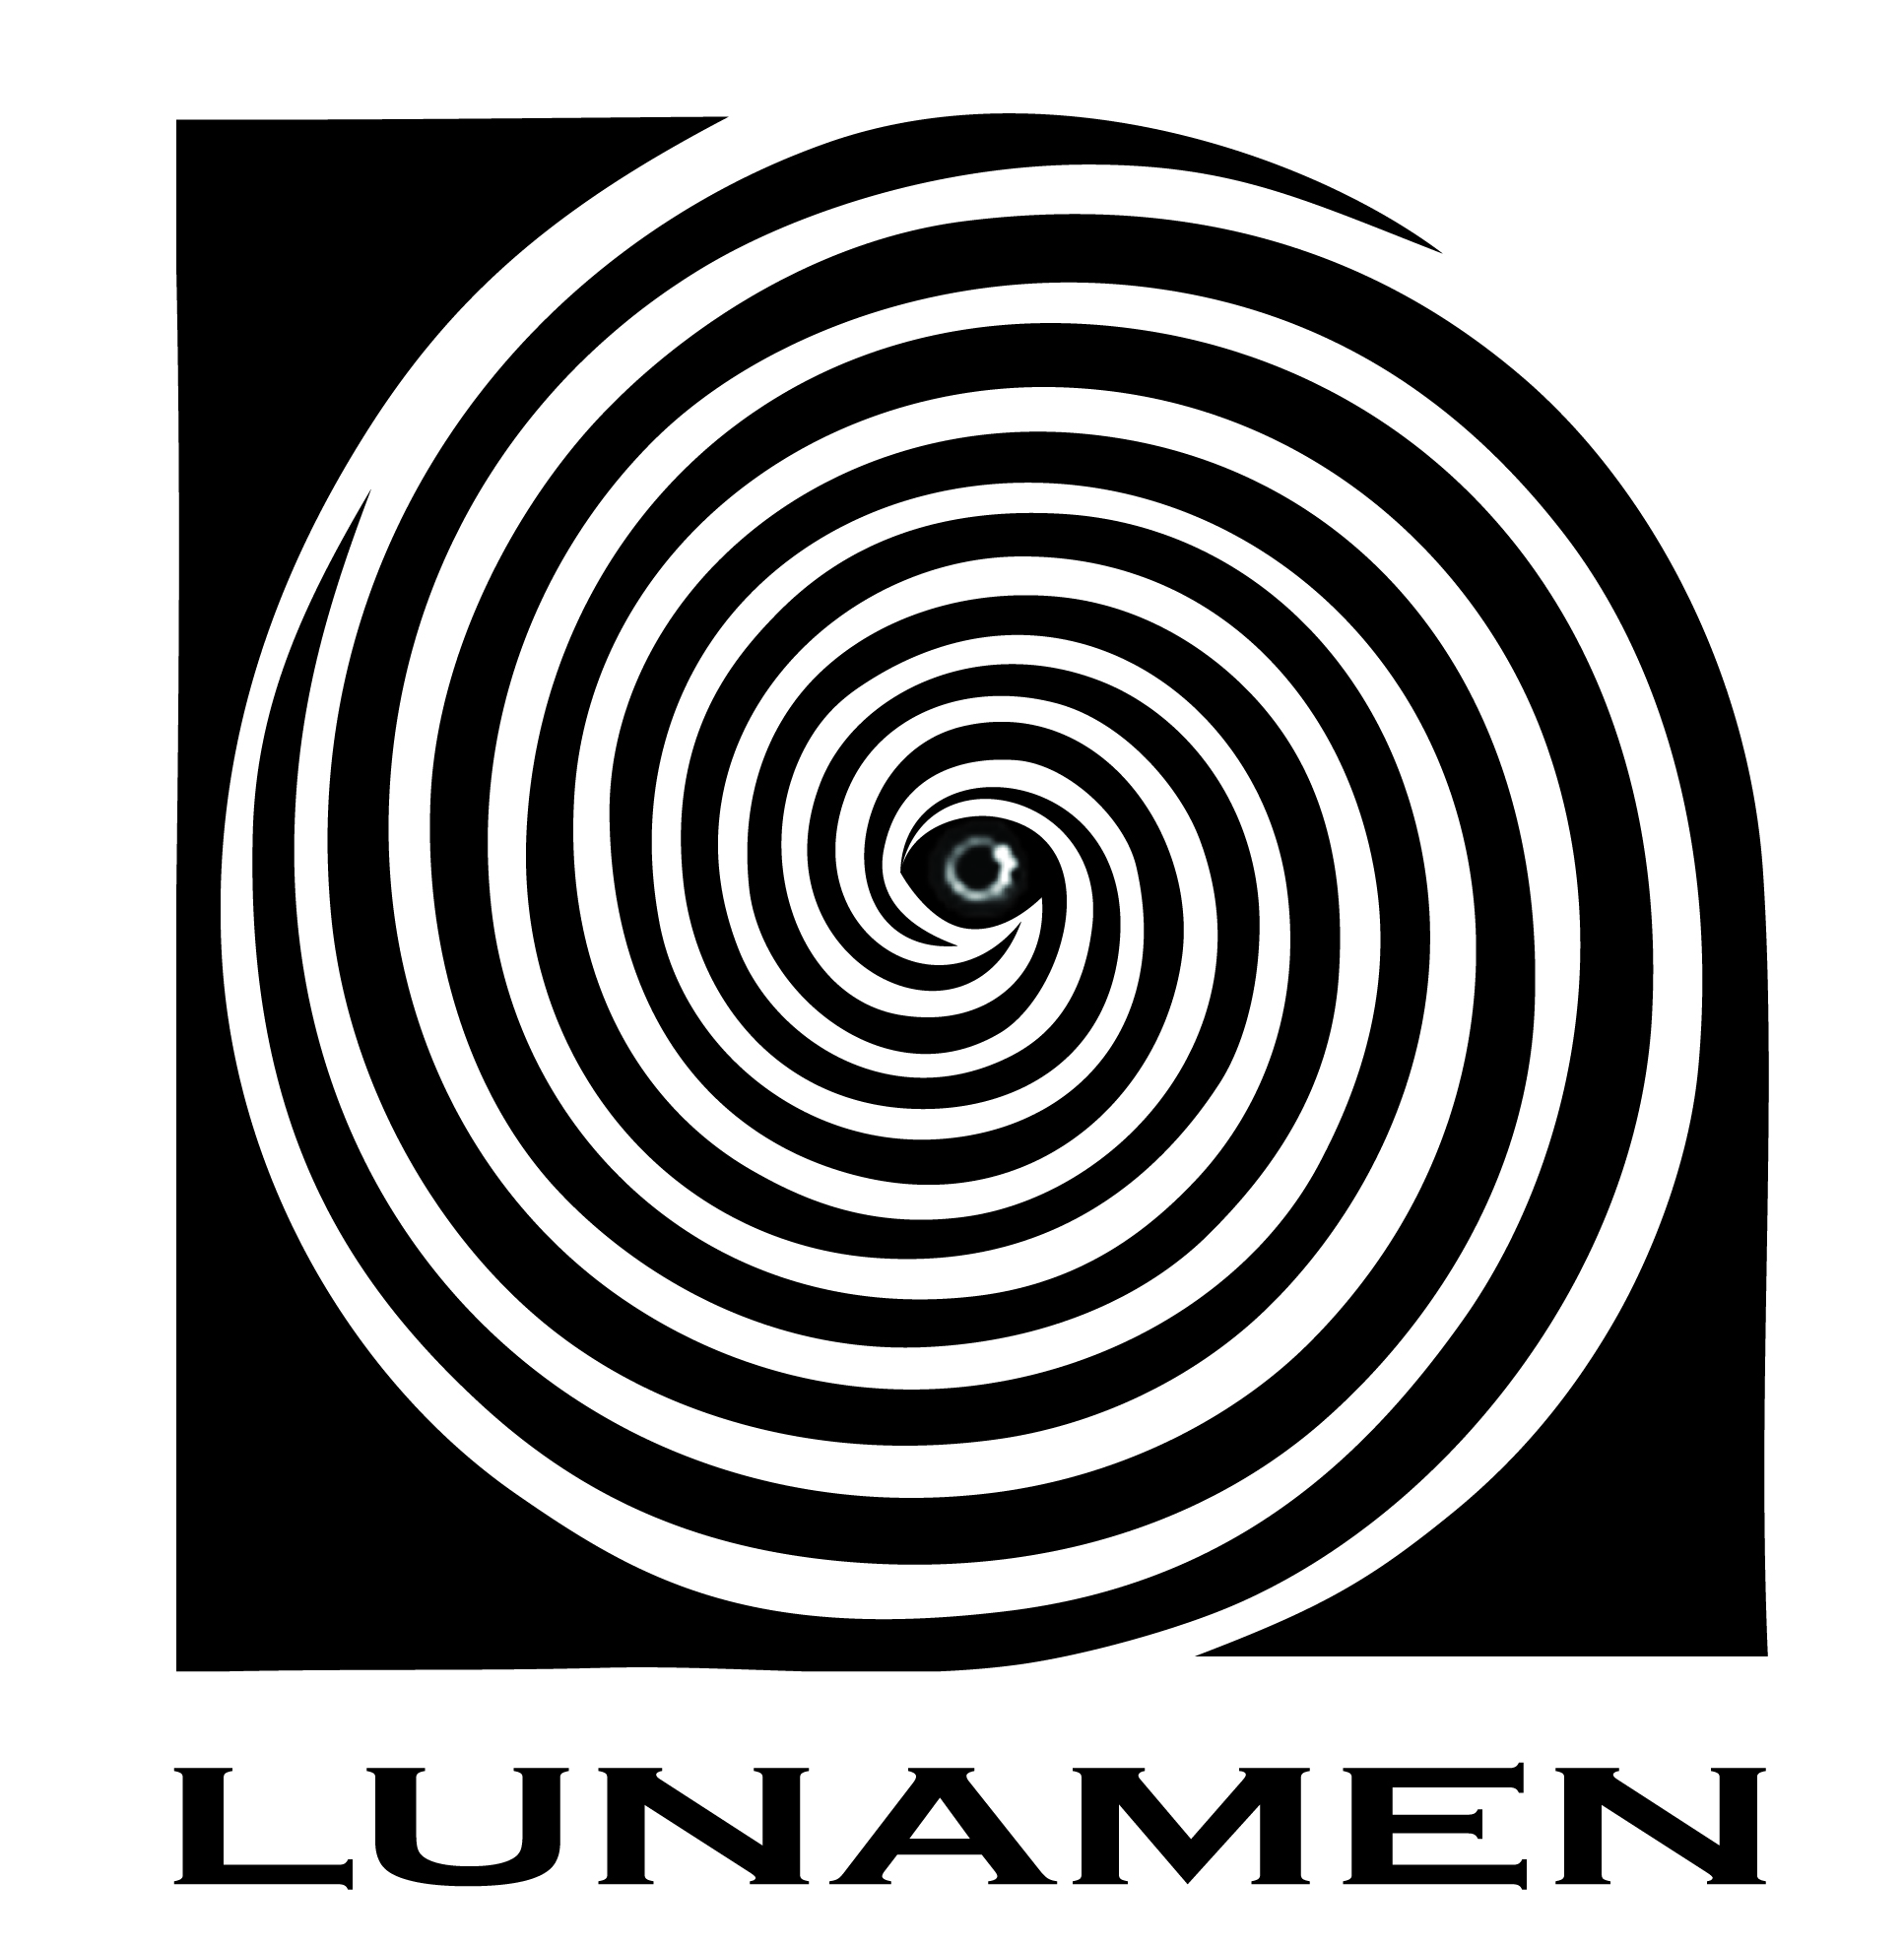 Lunateam